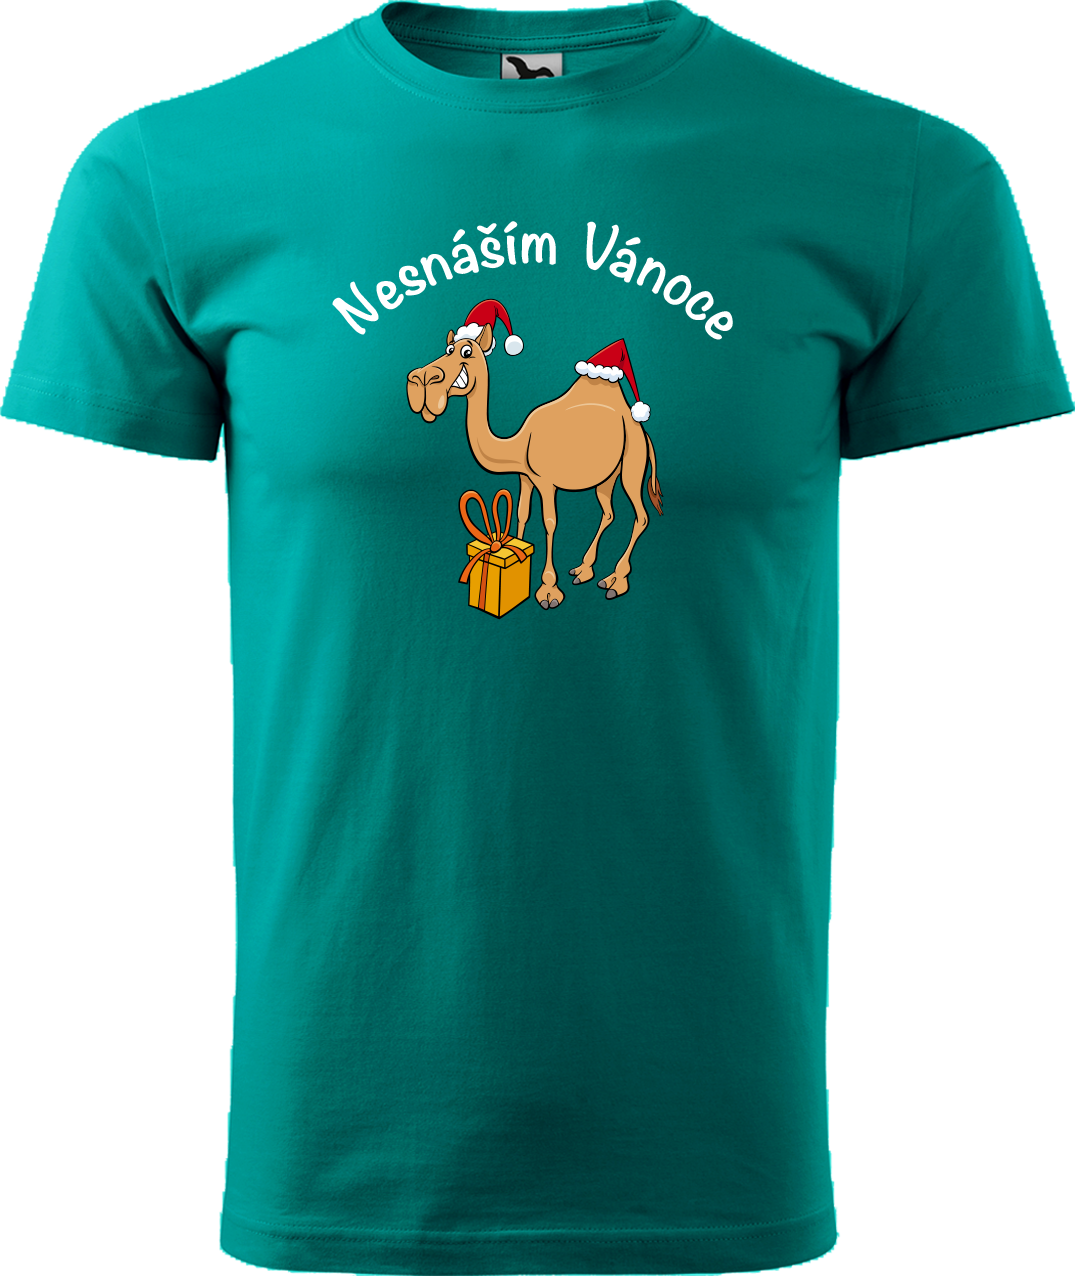 Pánské vánoční tričko - Nesnáším Vánoce Velikost: M, Barva: Emerald (19)